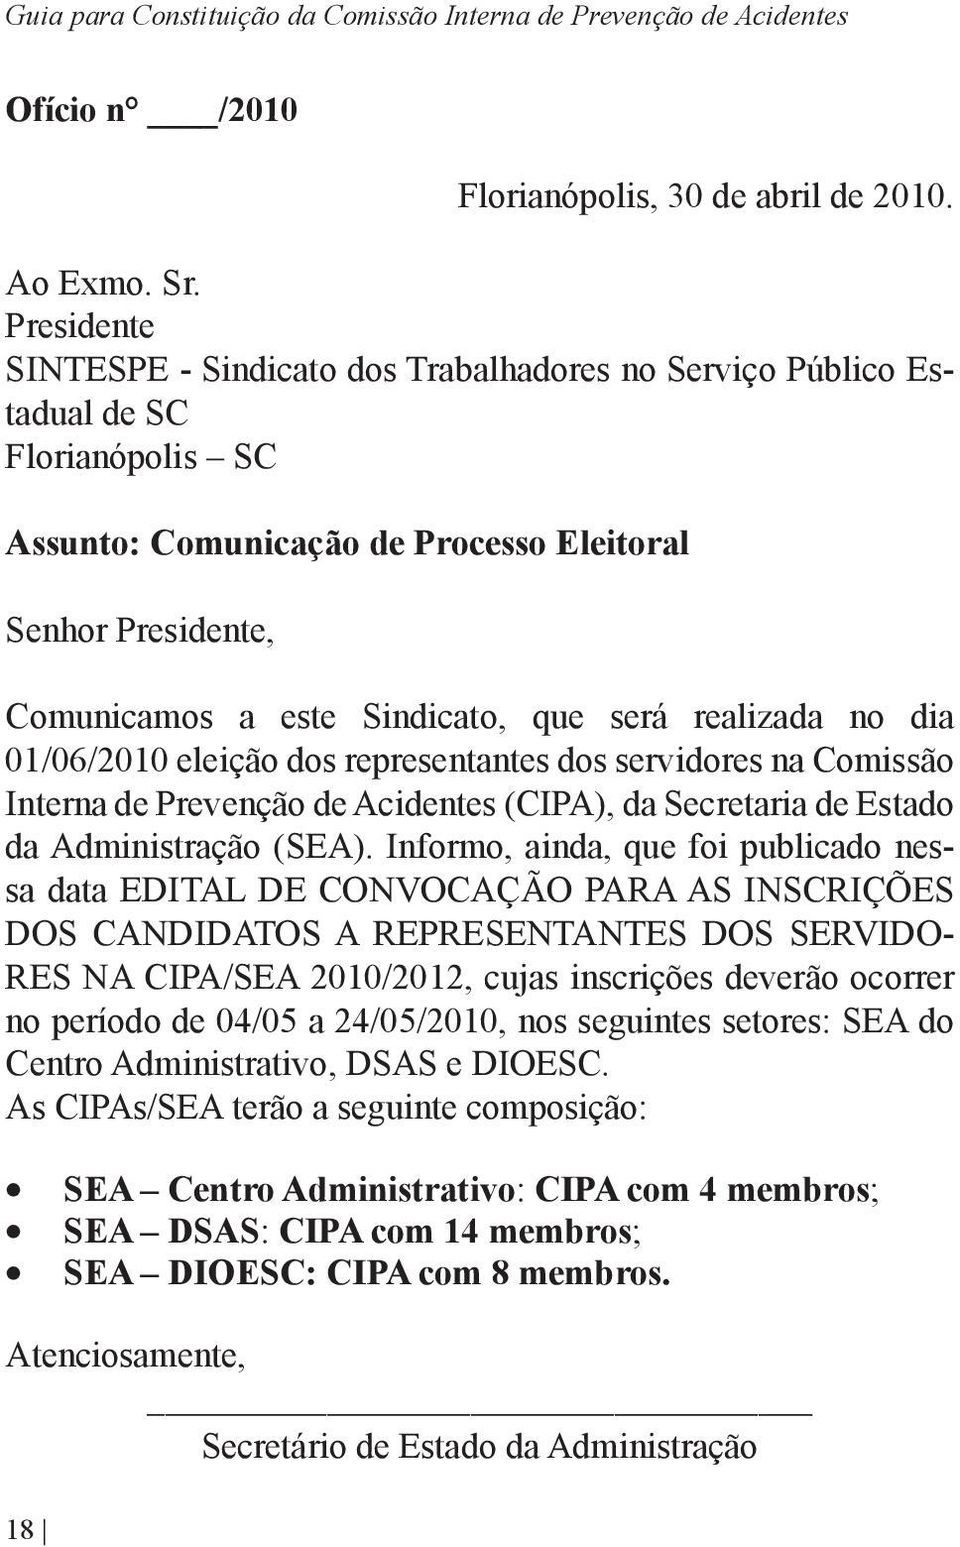 será realizada no dia 01/06/2010 eleição dos representantes dos servidores na Comissão Interna de Prevenção de Acidentes (CIPA), da Secretaria de Estado da Administração (SEA).